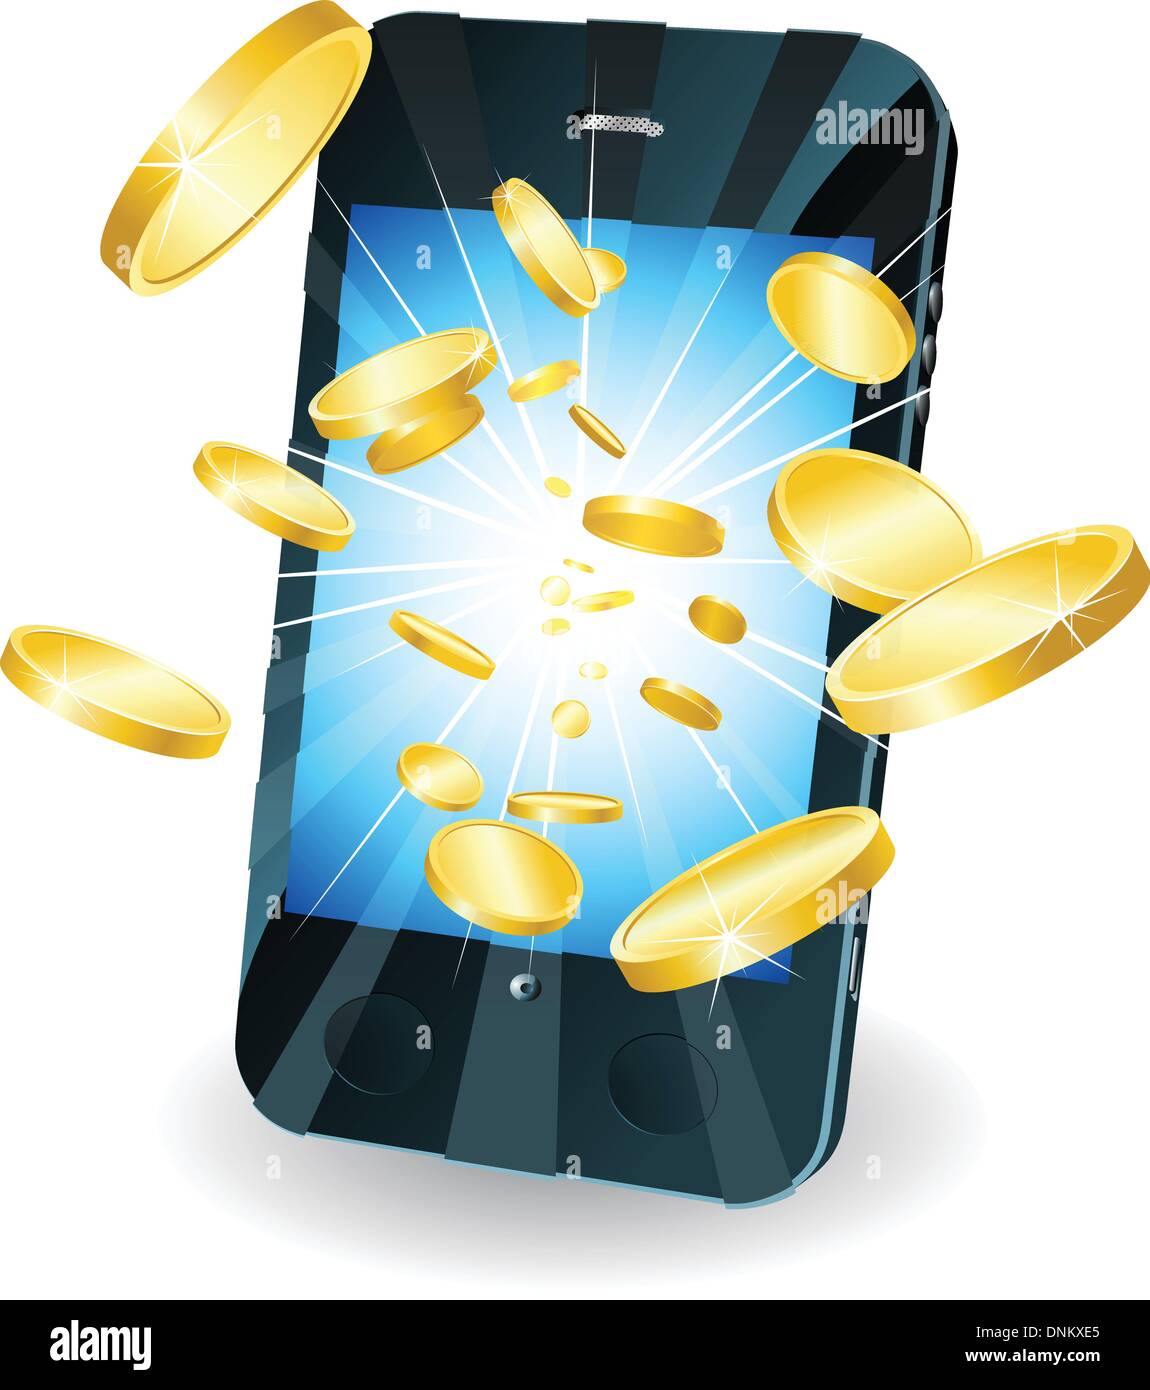 Konzeptionelle Darstellung. Geld in Form von Goldmünzen, die neuen Stil Smartphone Mobile herausfliegen. Stock Vektor